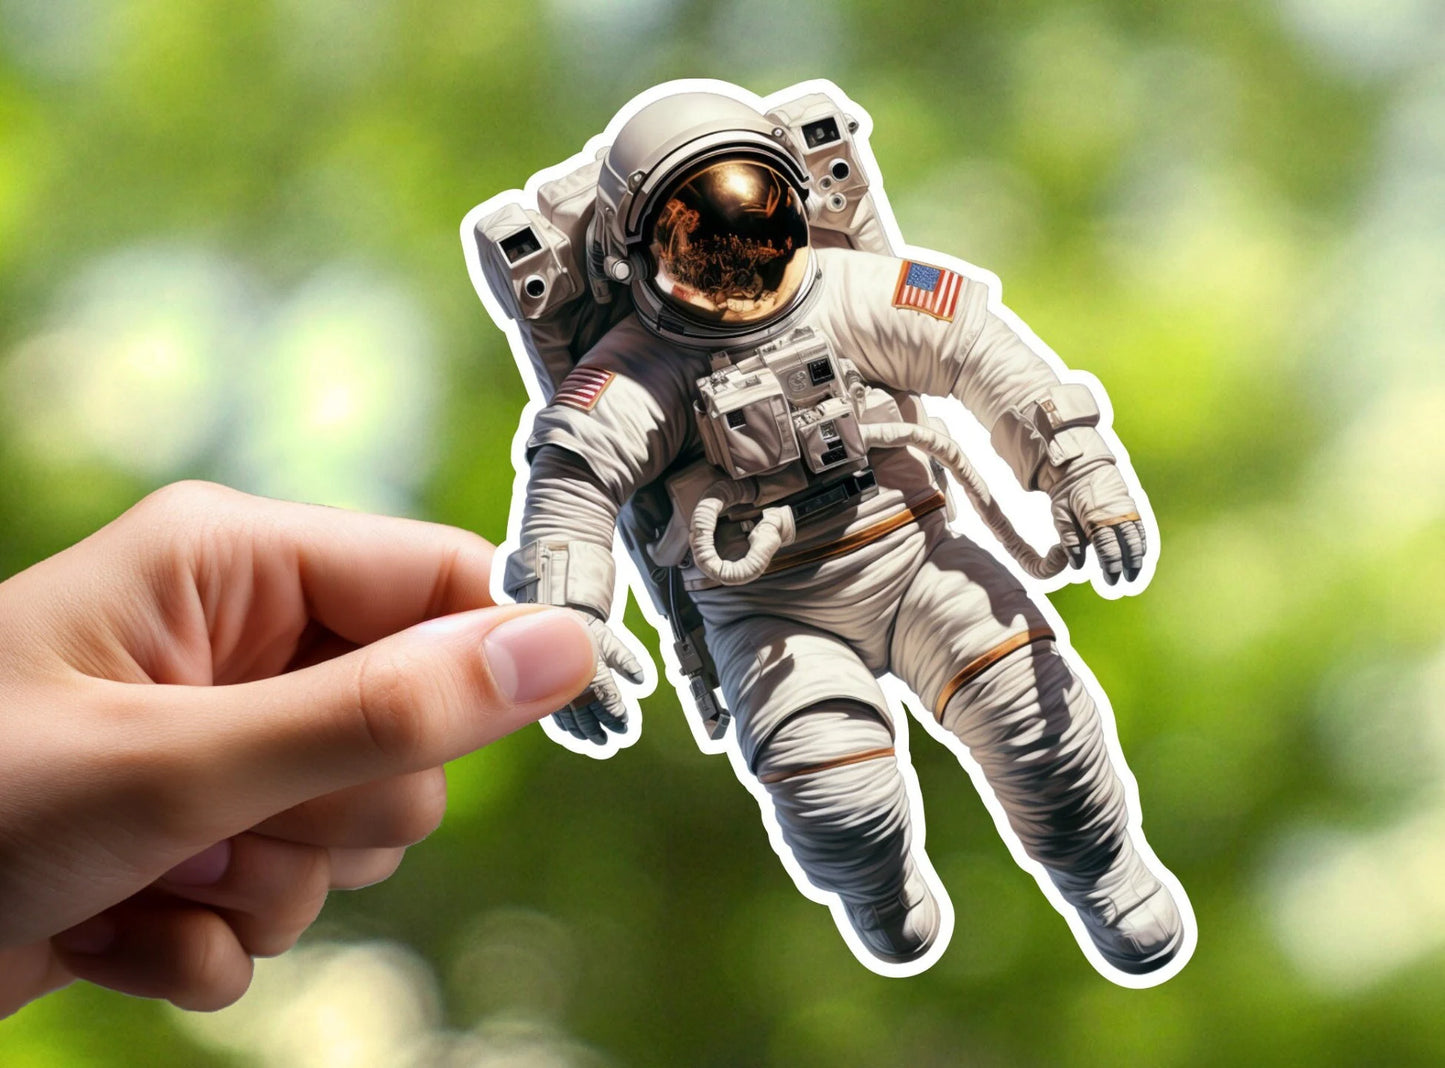 Astronaut Sticker